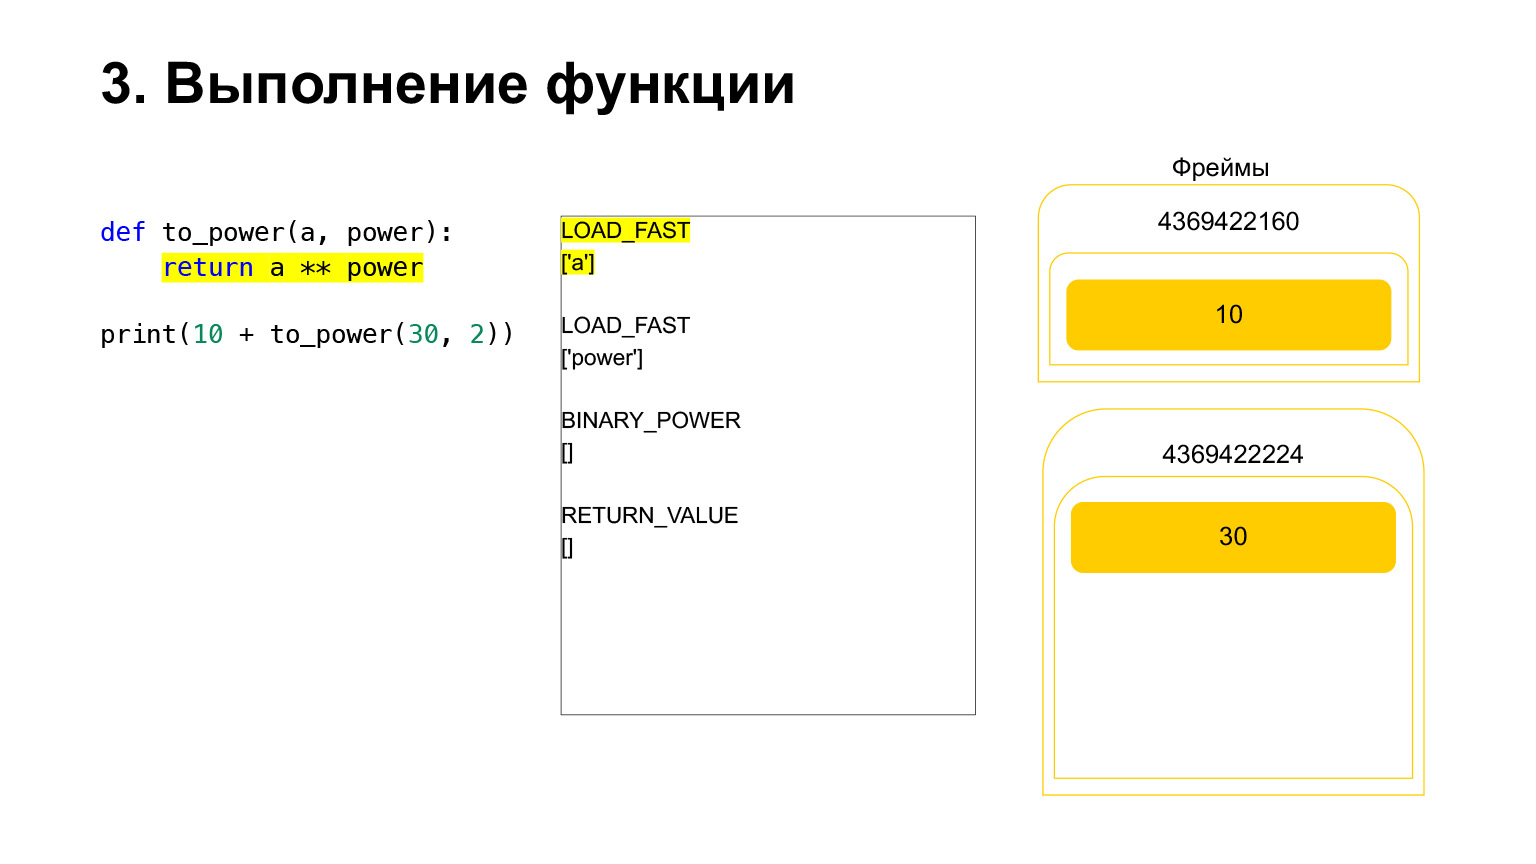 Устройство CPython. Доклад Яндекса - 21